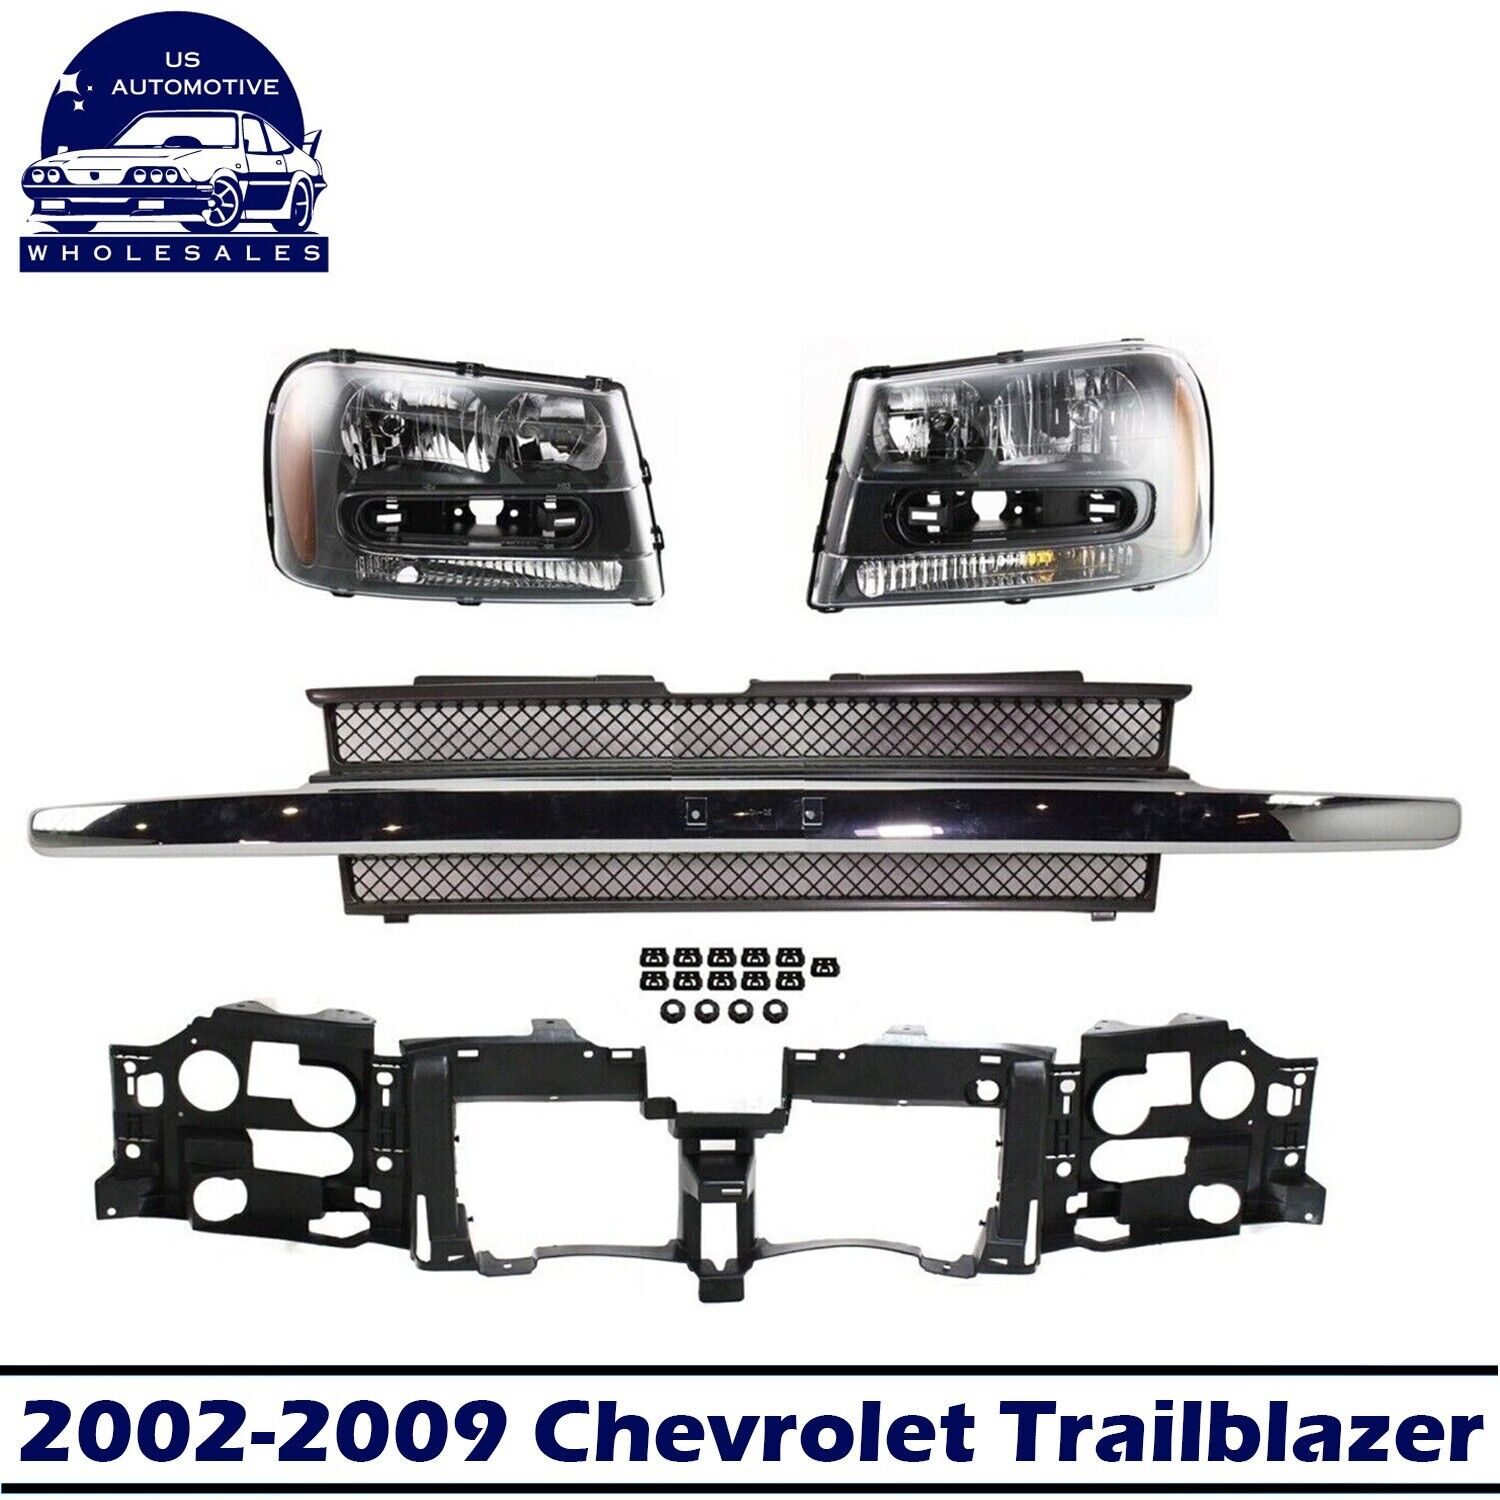 Header Panel Grille Assembly Headlight Kit For 2002-2009 Chevrolet Trailblazer